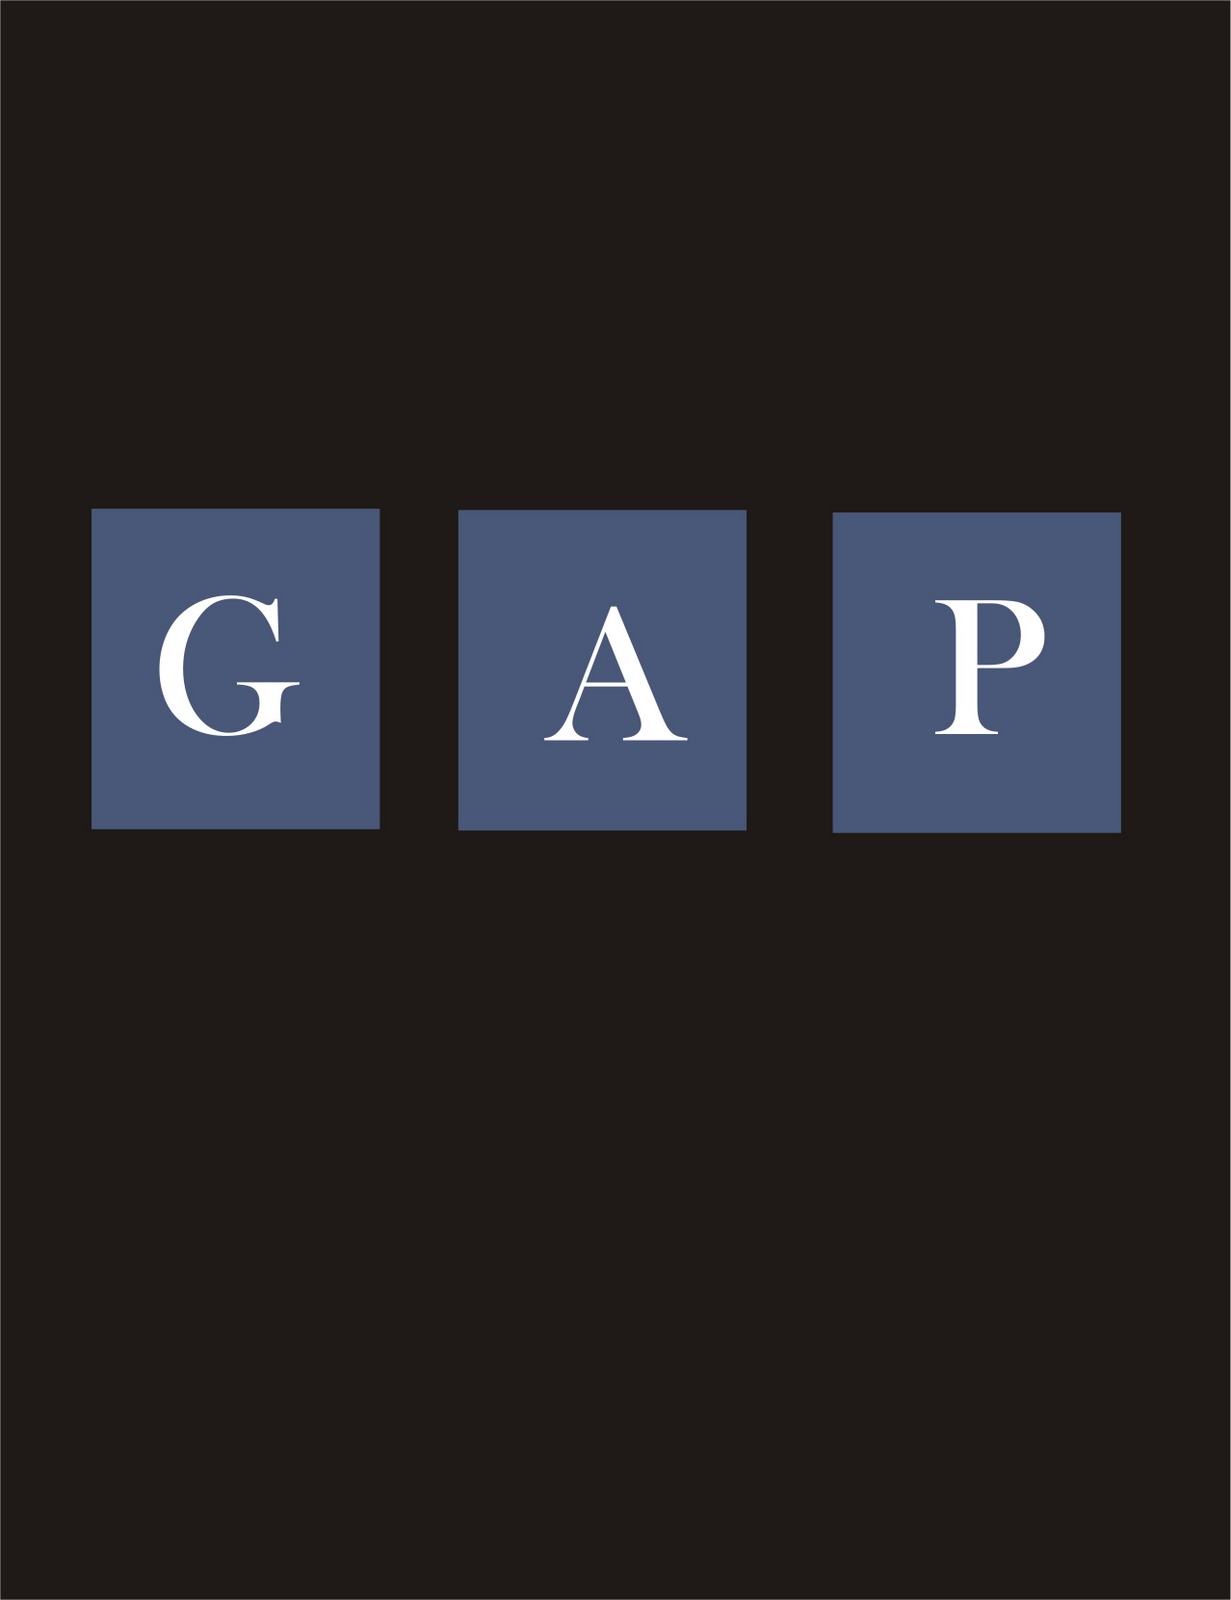 Gr 11 Graphics Class: GAP logo